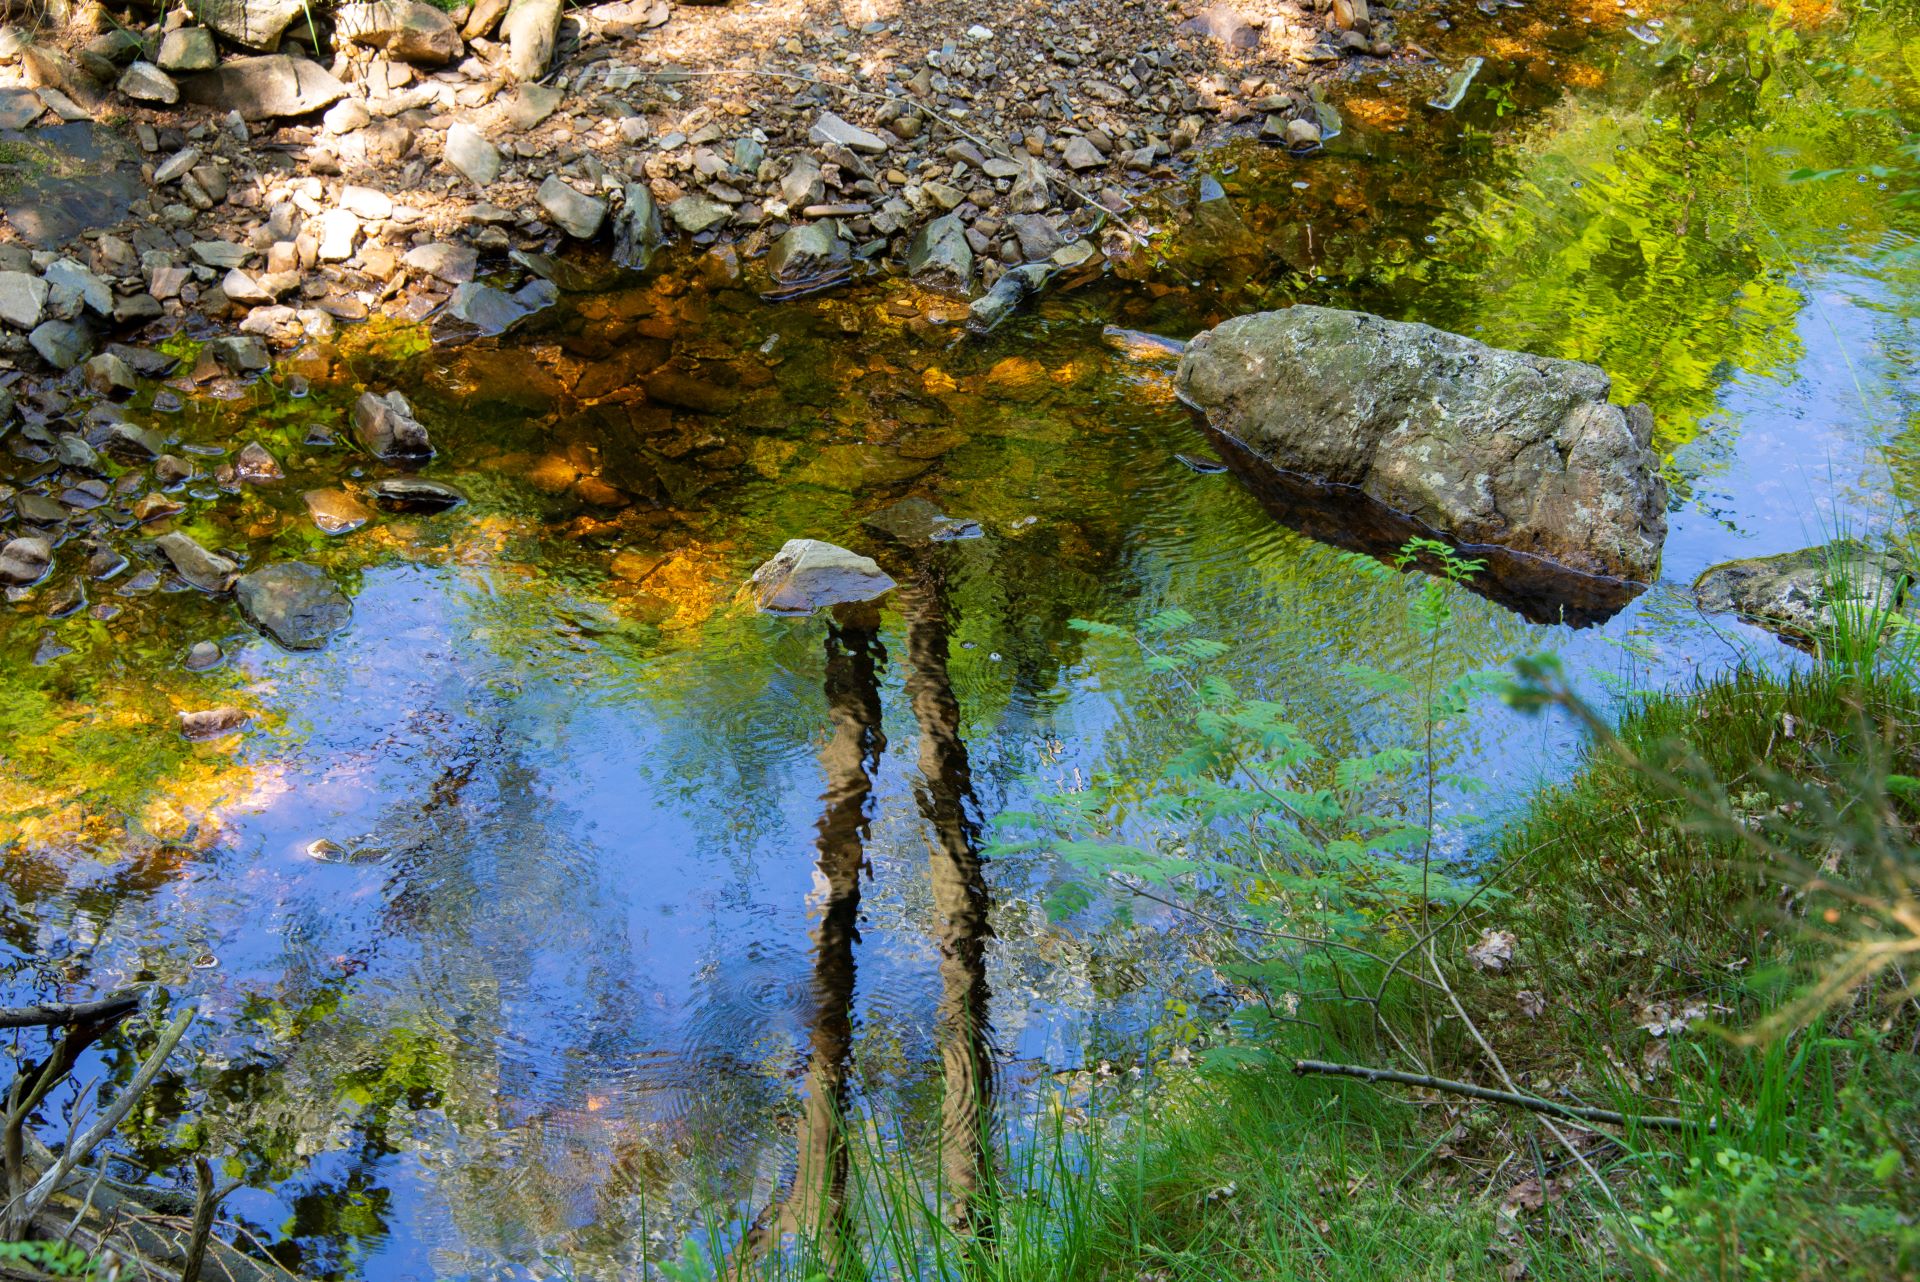 Un petit ruisseau est le point central de cette peinture, reflétant les couleurs de la nature qui l'entoure.